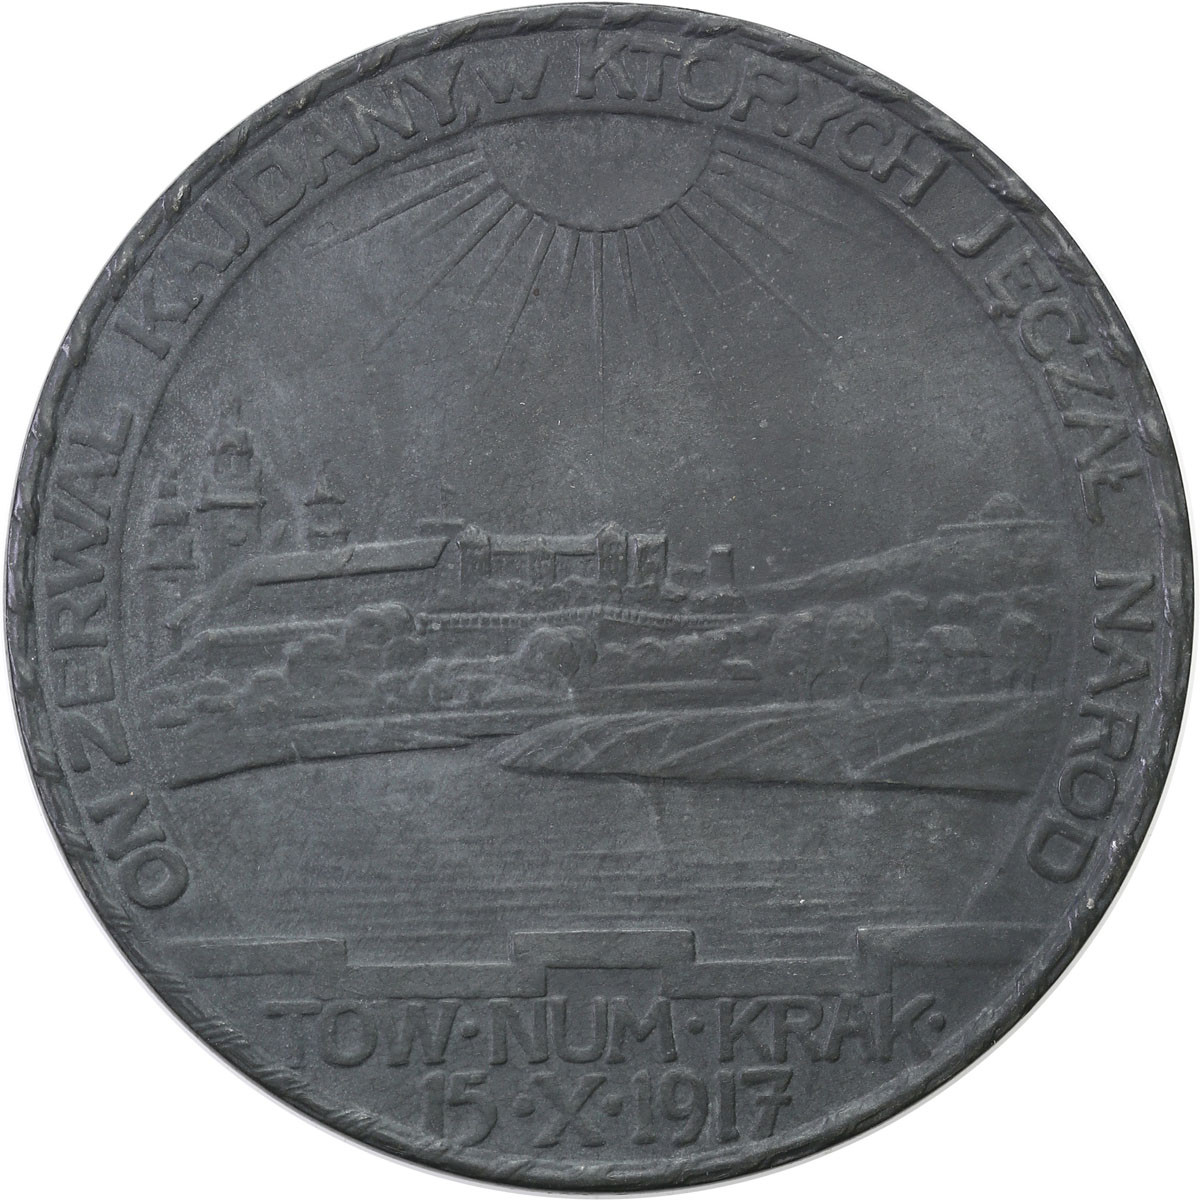 Polska pod zaborami. Medal 1917 - Tadeusz Kościuszko 1917, cynk